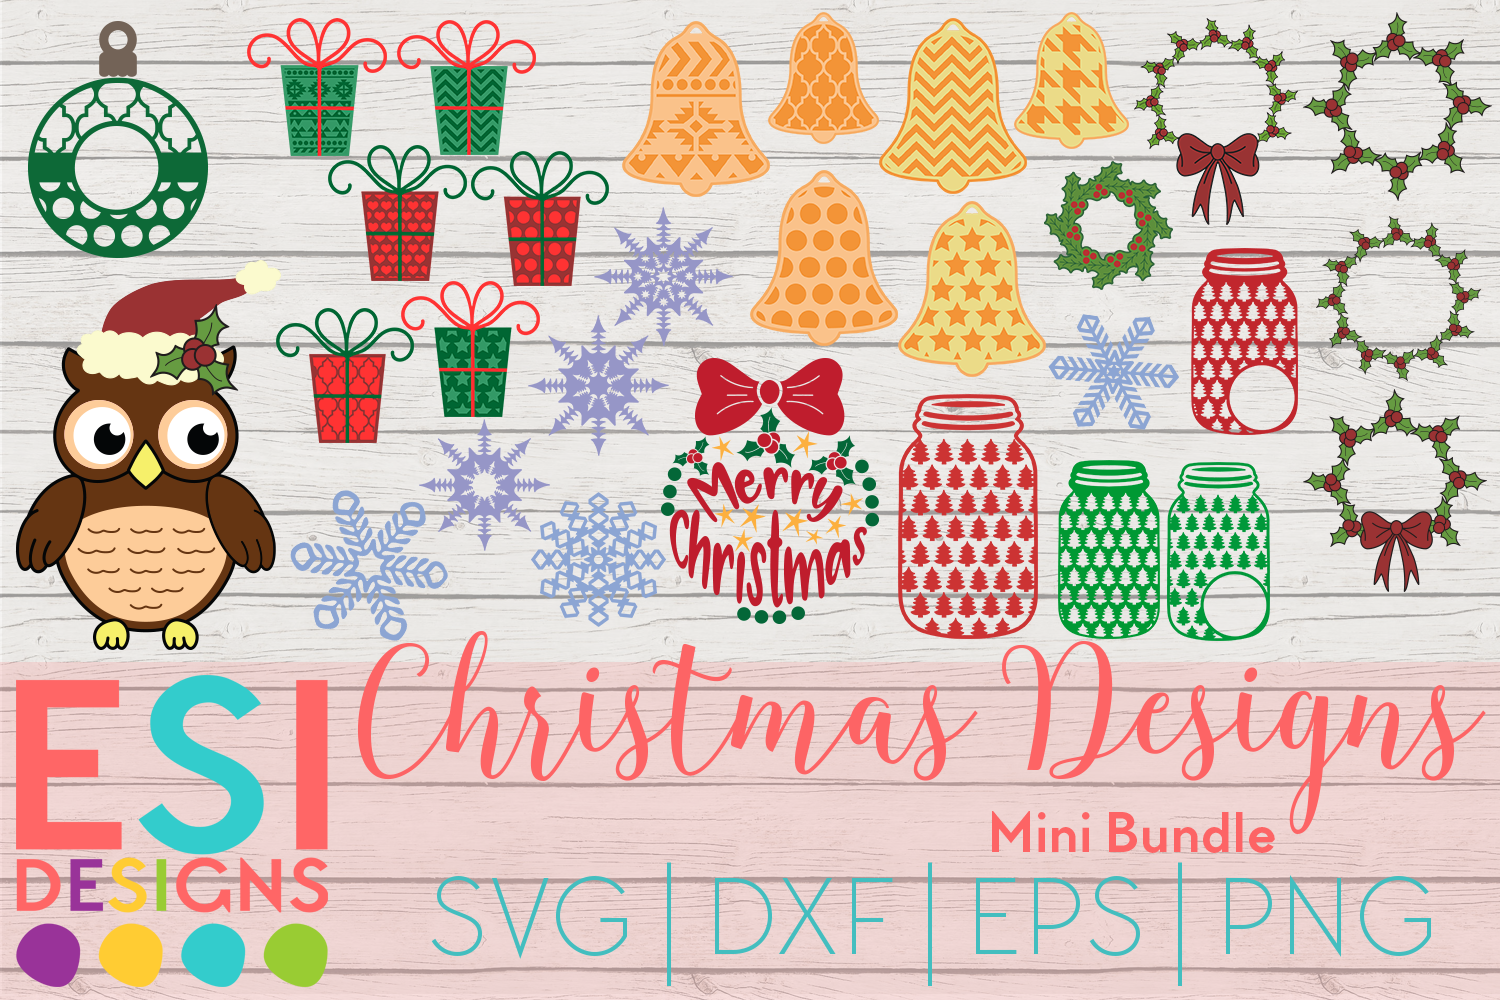 Download Christmas SVG Mini Bundle | SVG DXF EPS PNG